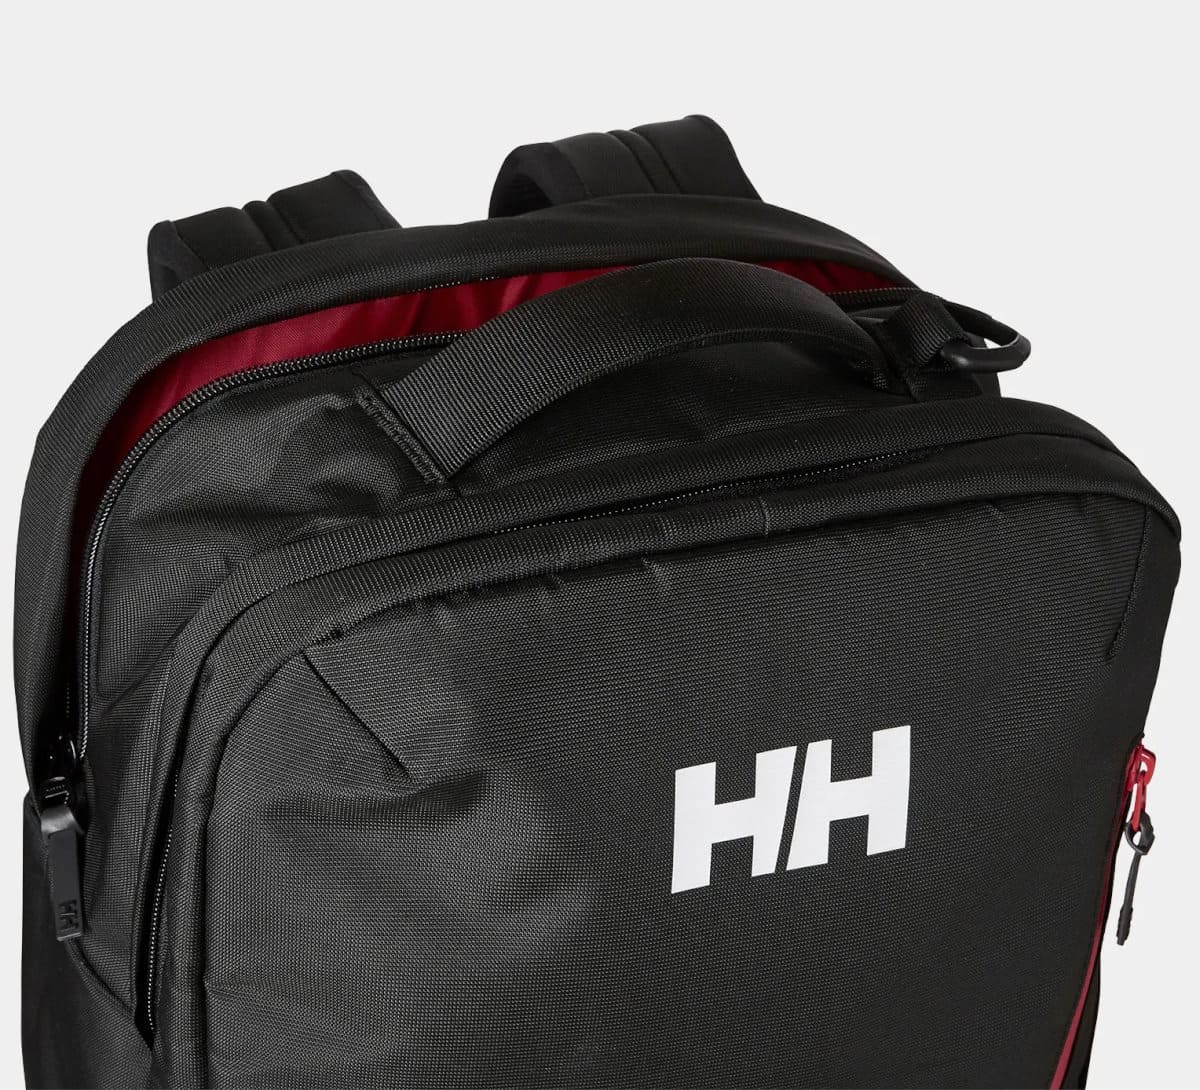 Las 3 mochilas Helly Hansen para este invierno – Panorama Náutico